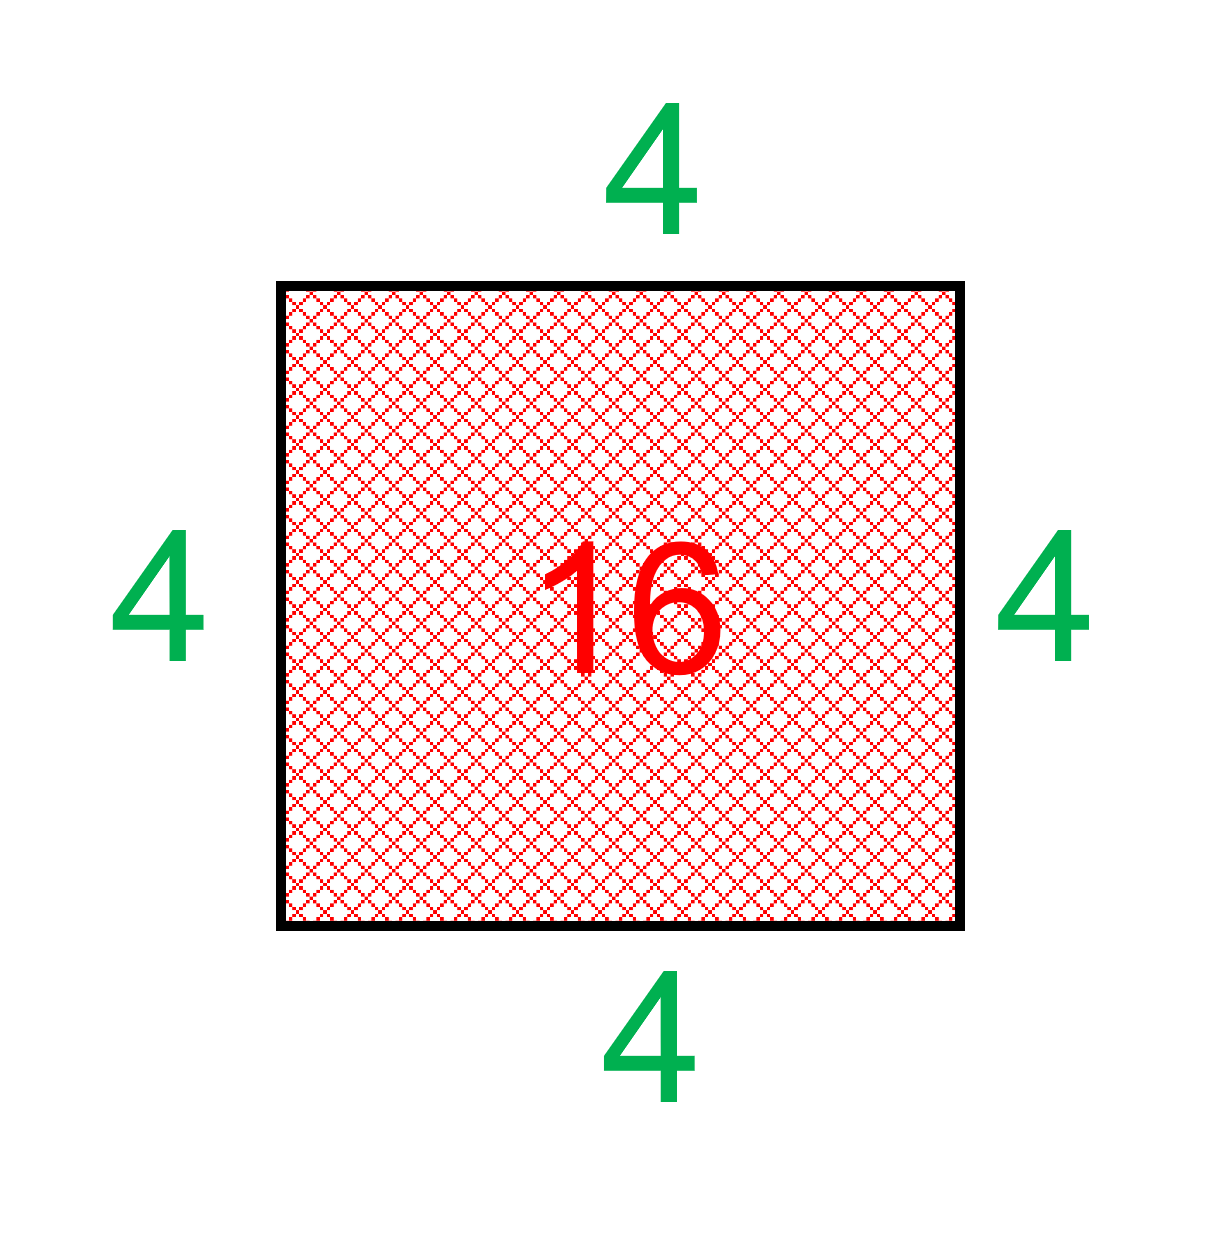 kvadrat med areal lik 16